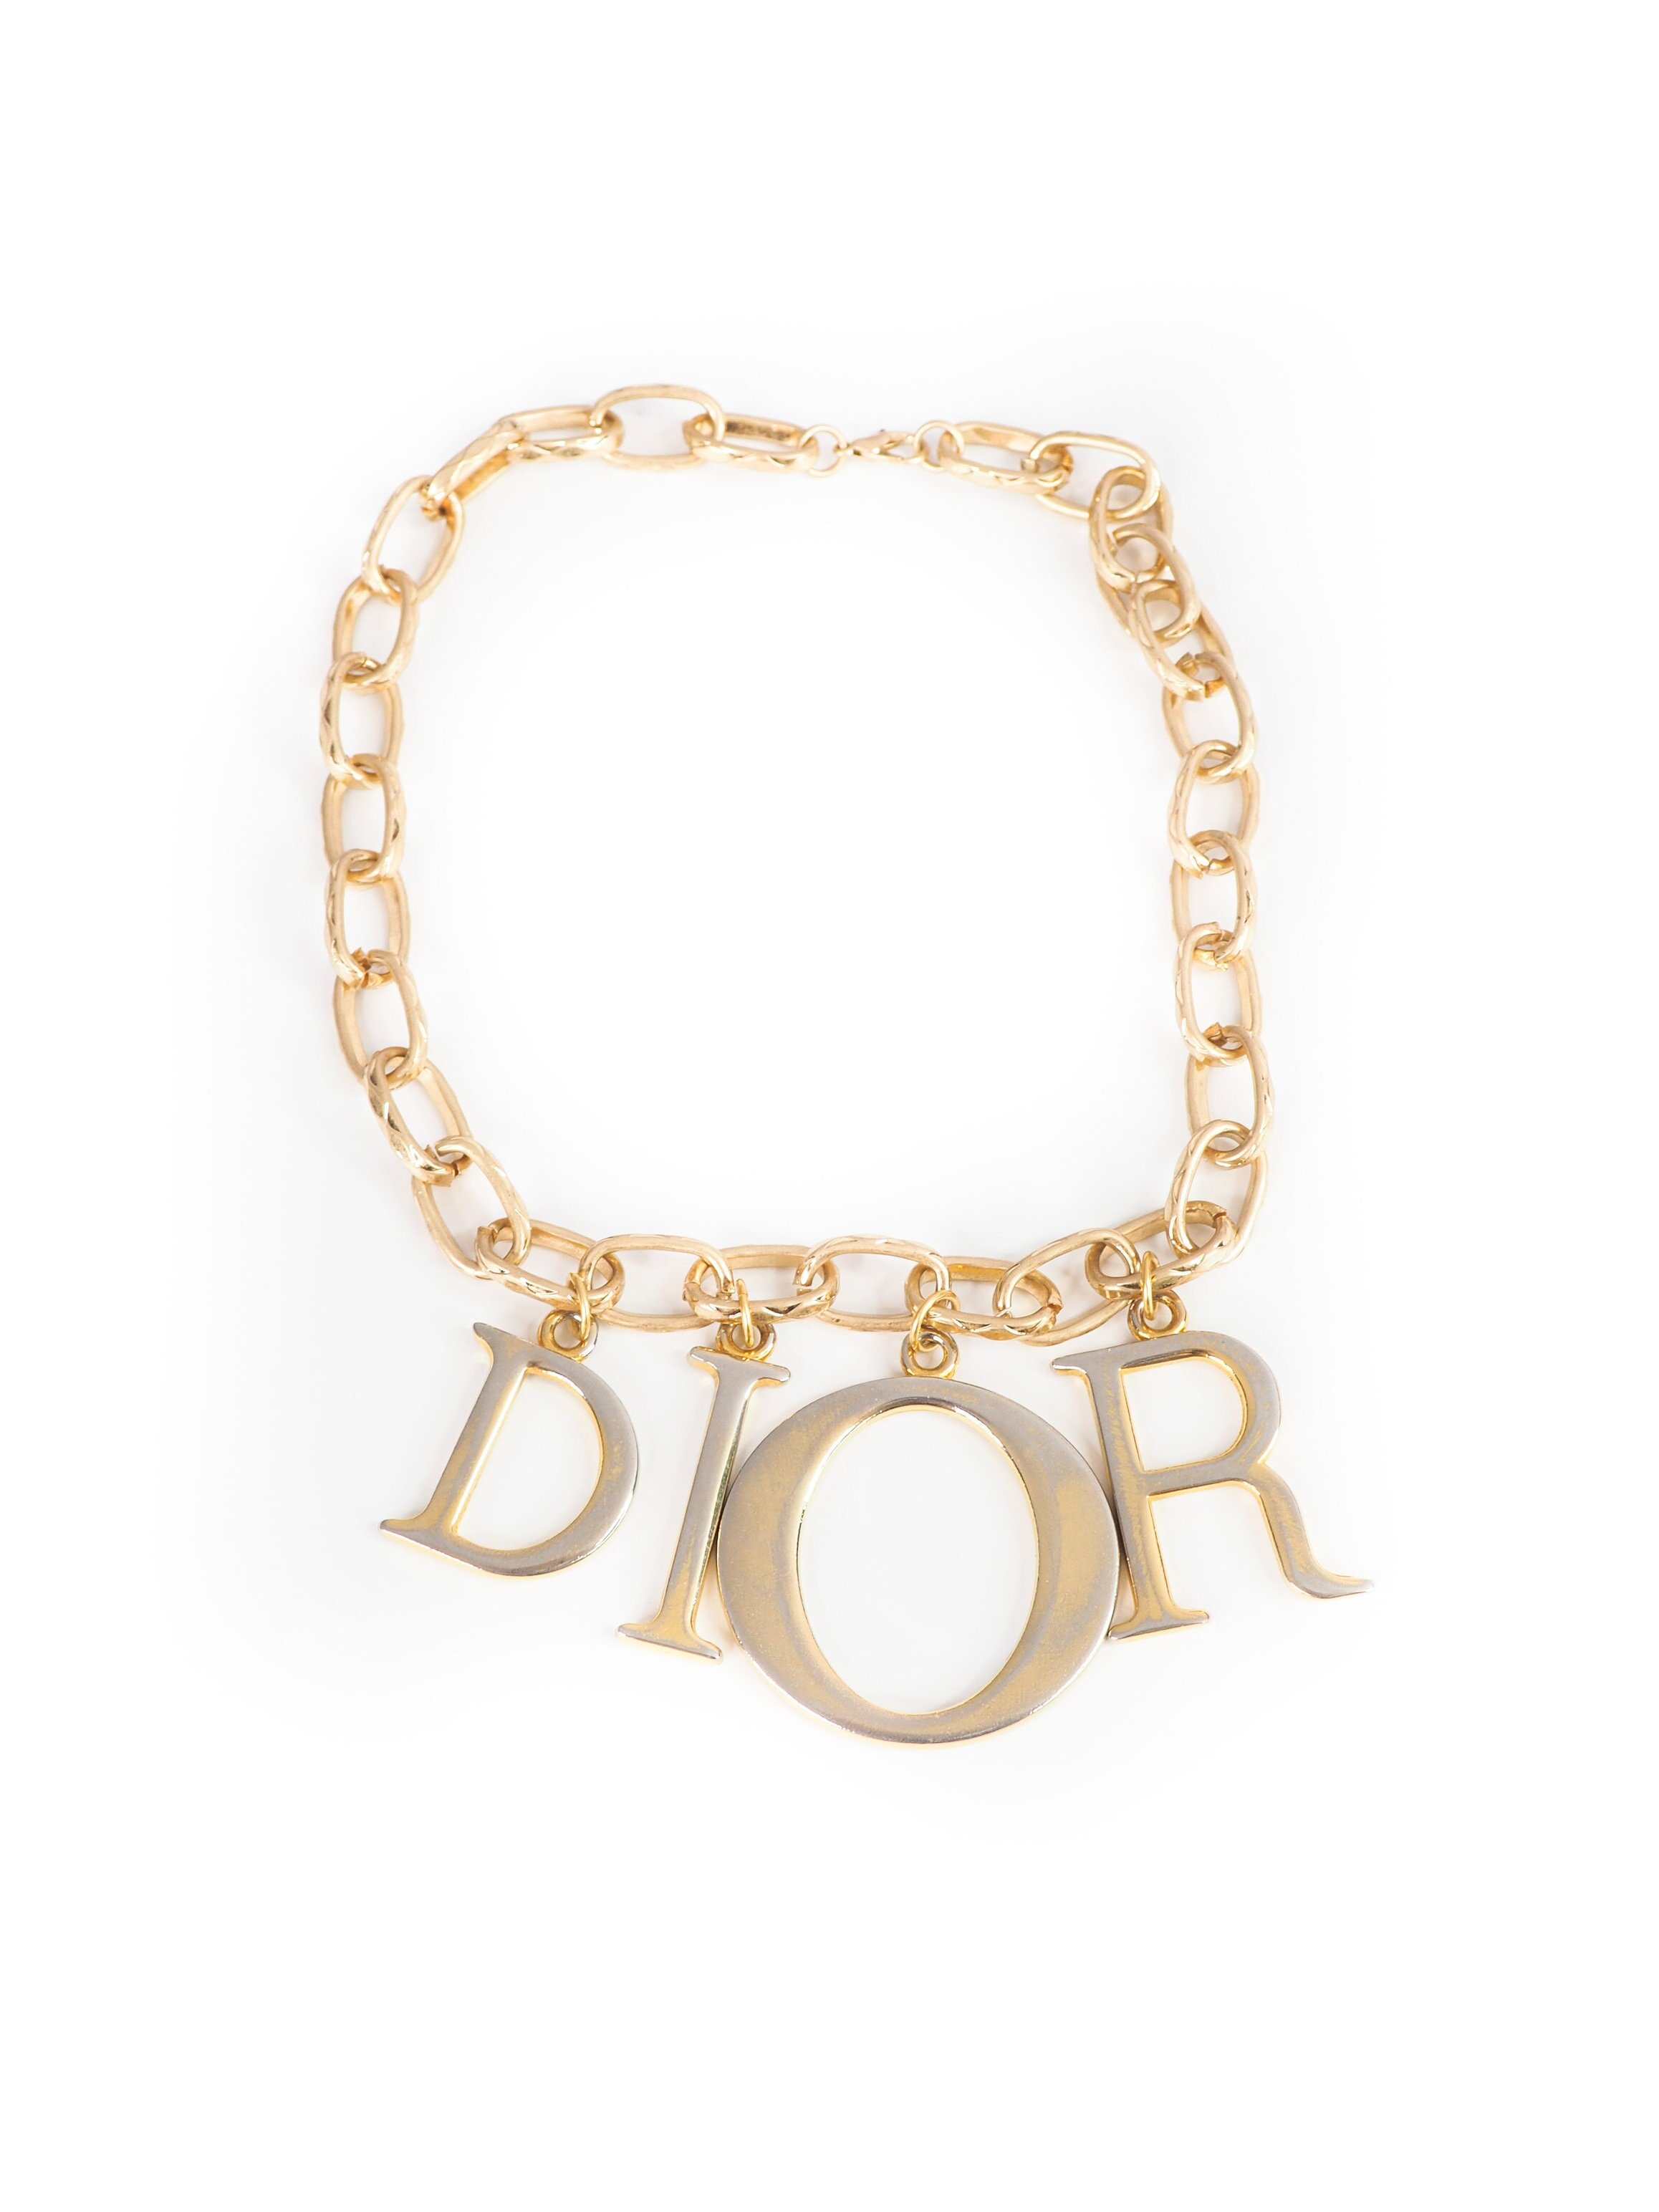 dior necklaces 2019